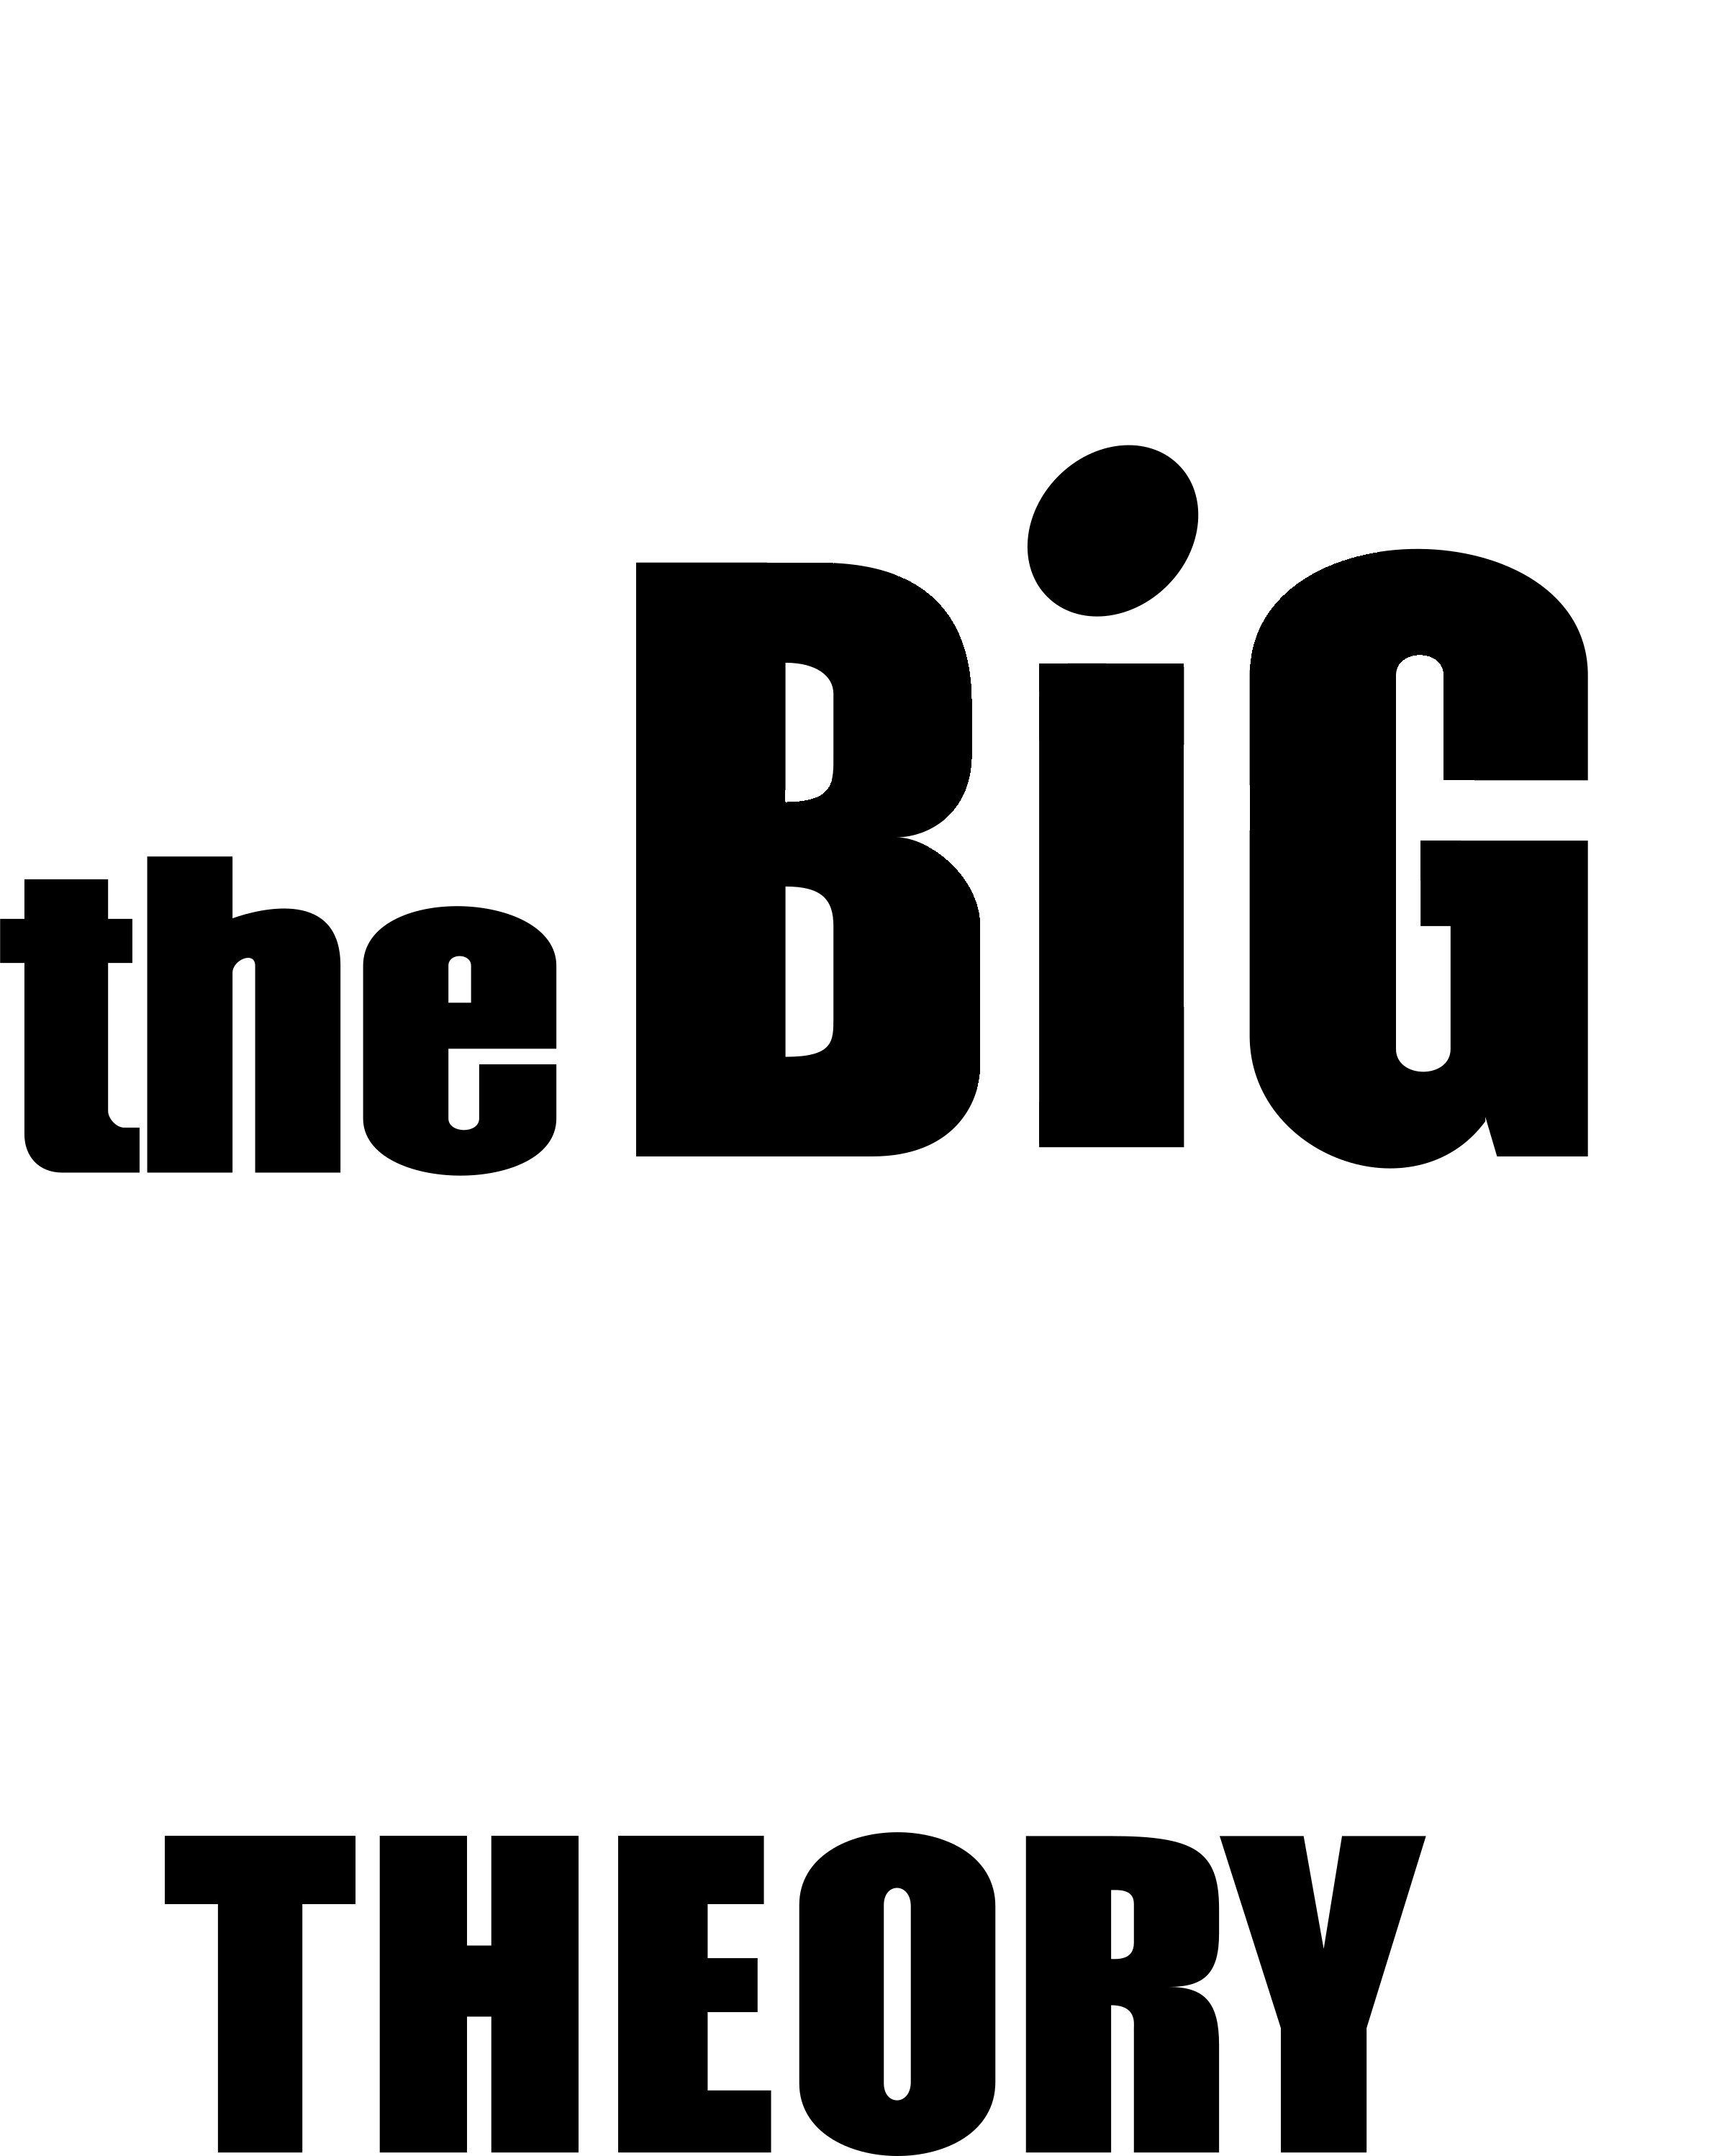 The Big Bang Theory Logo PNG descarga gratuita